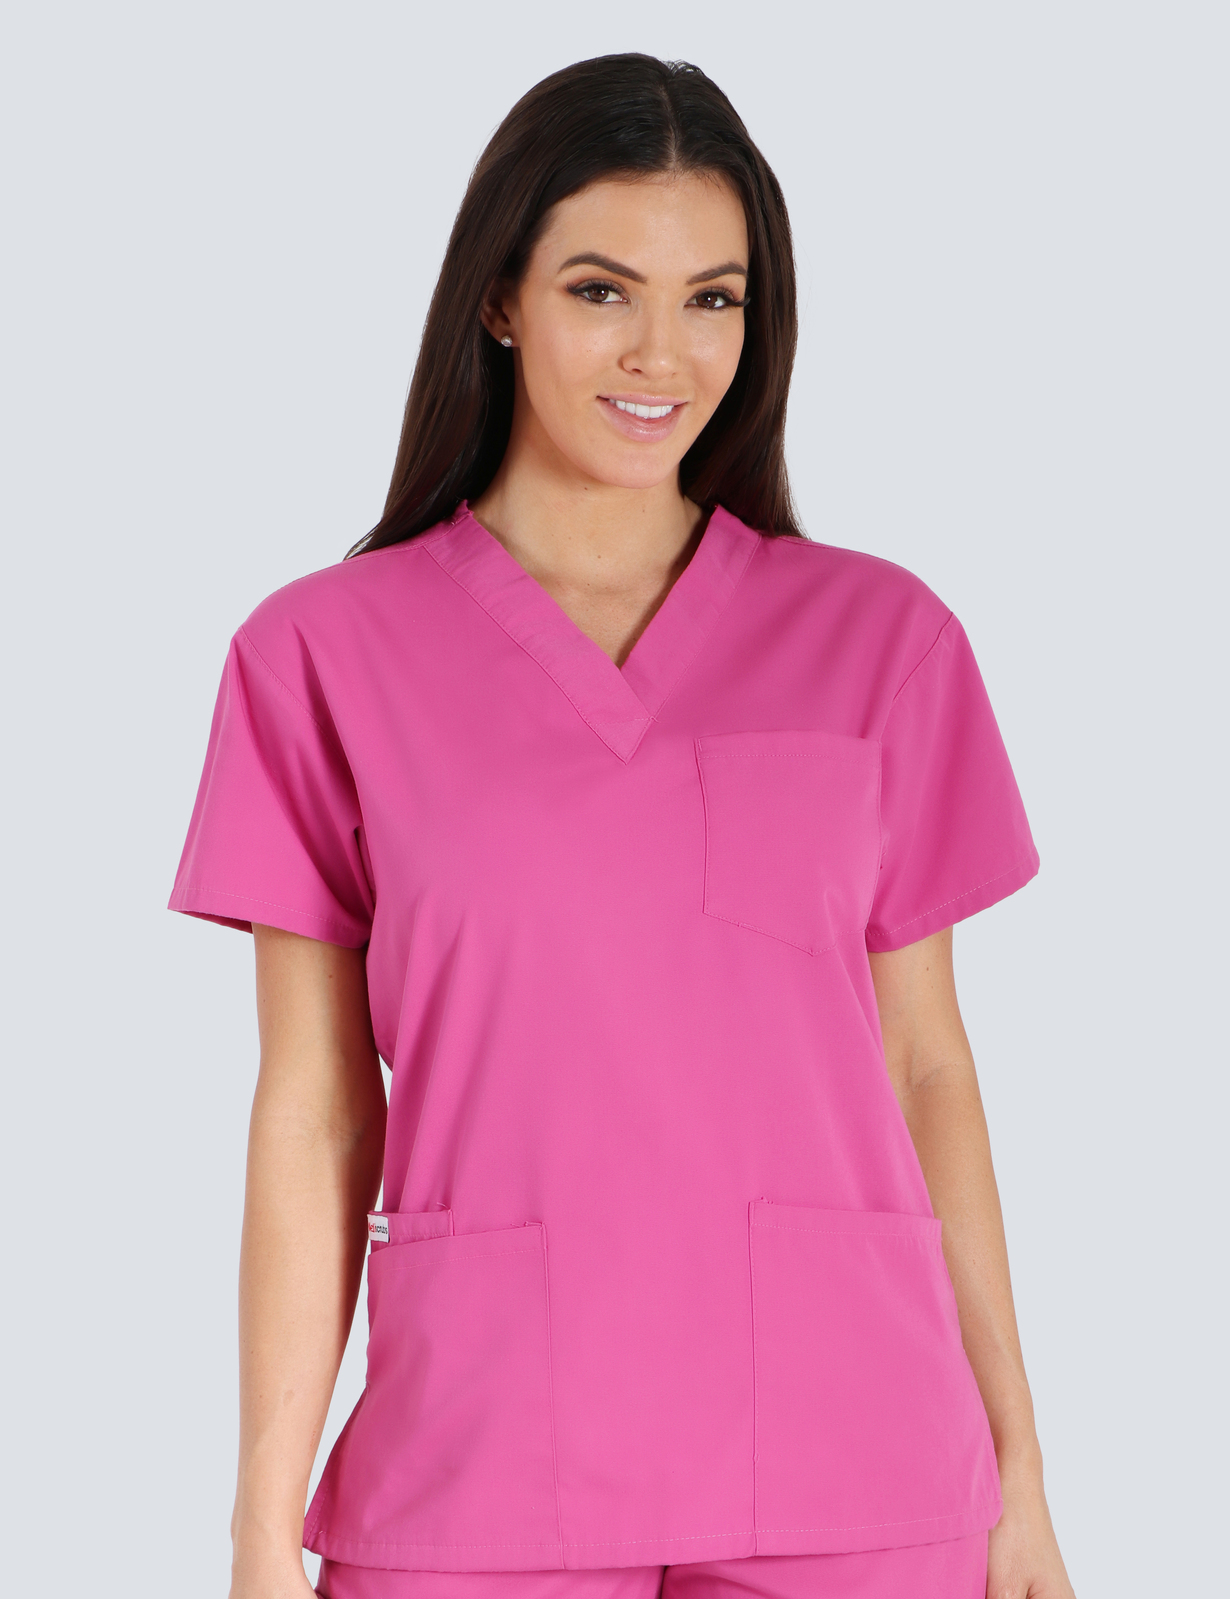 Queensland Children's Hospital Emergency Department Senior Medical Officer Uniform Top Bundle  (4 Pocket Top in Pink  incl Logos)